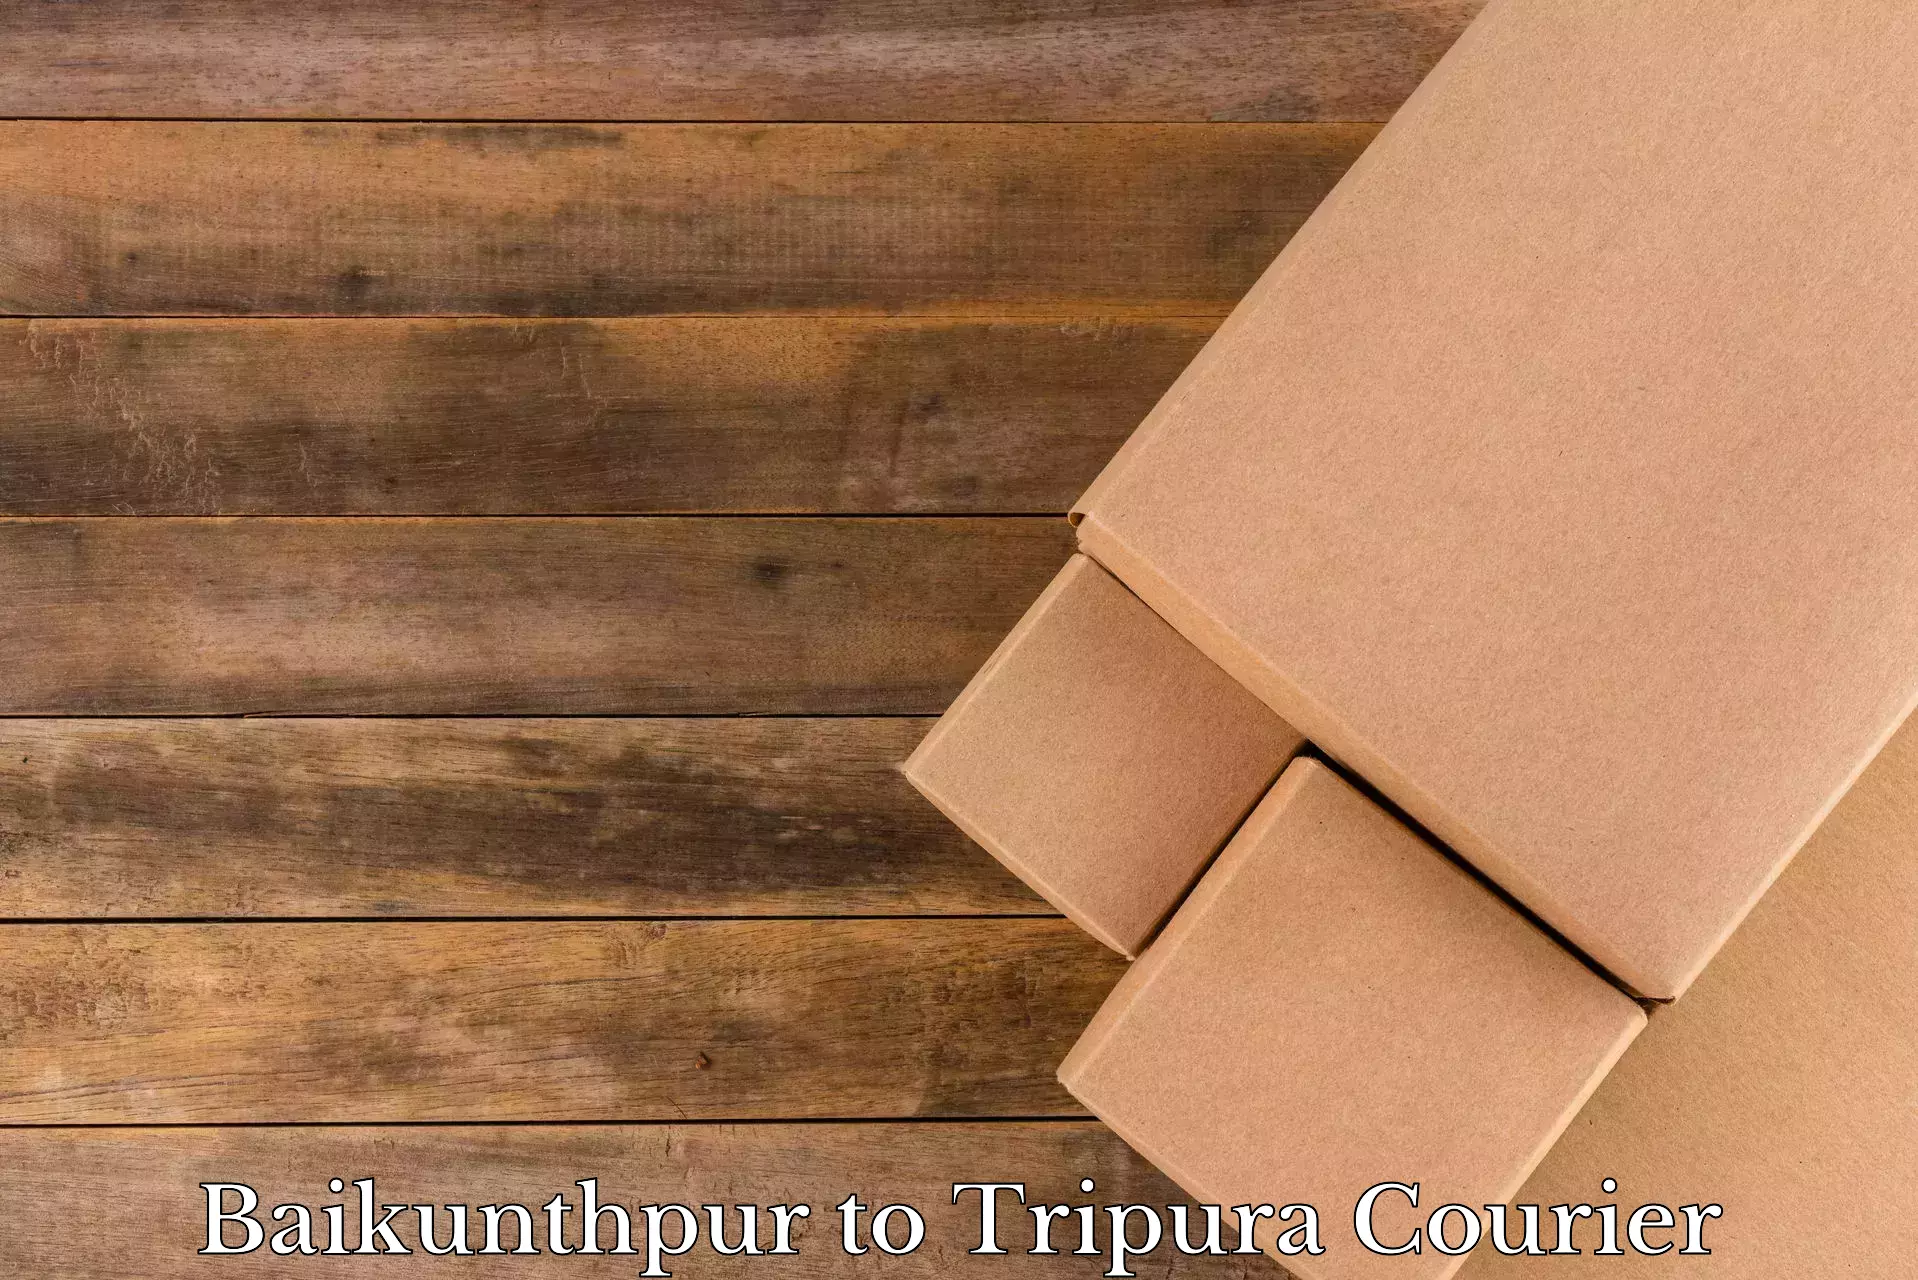 Efficient household movers Baikunthpur to Udaipur Tripura